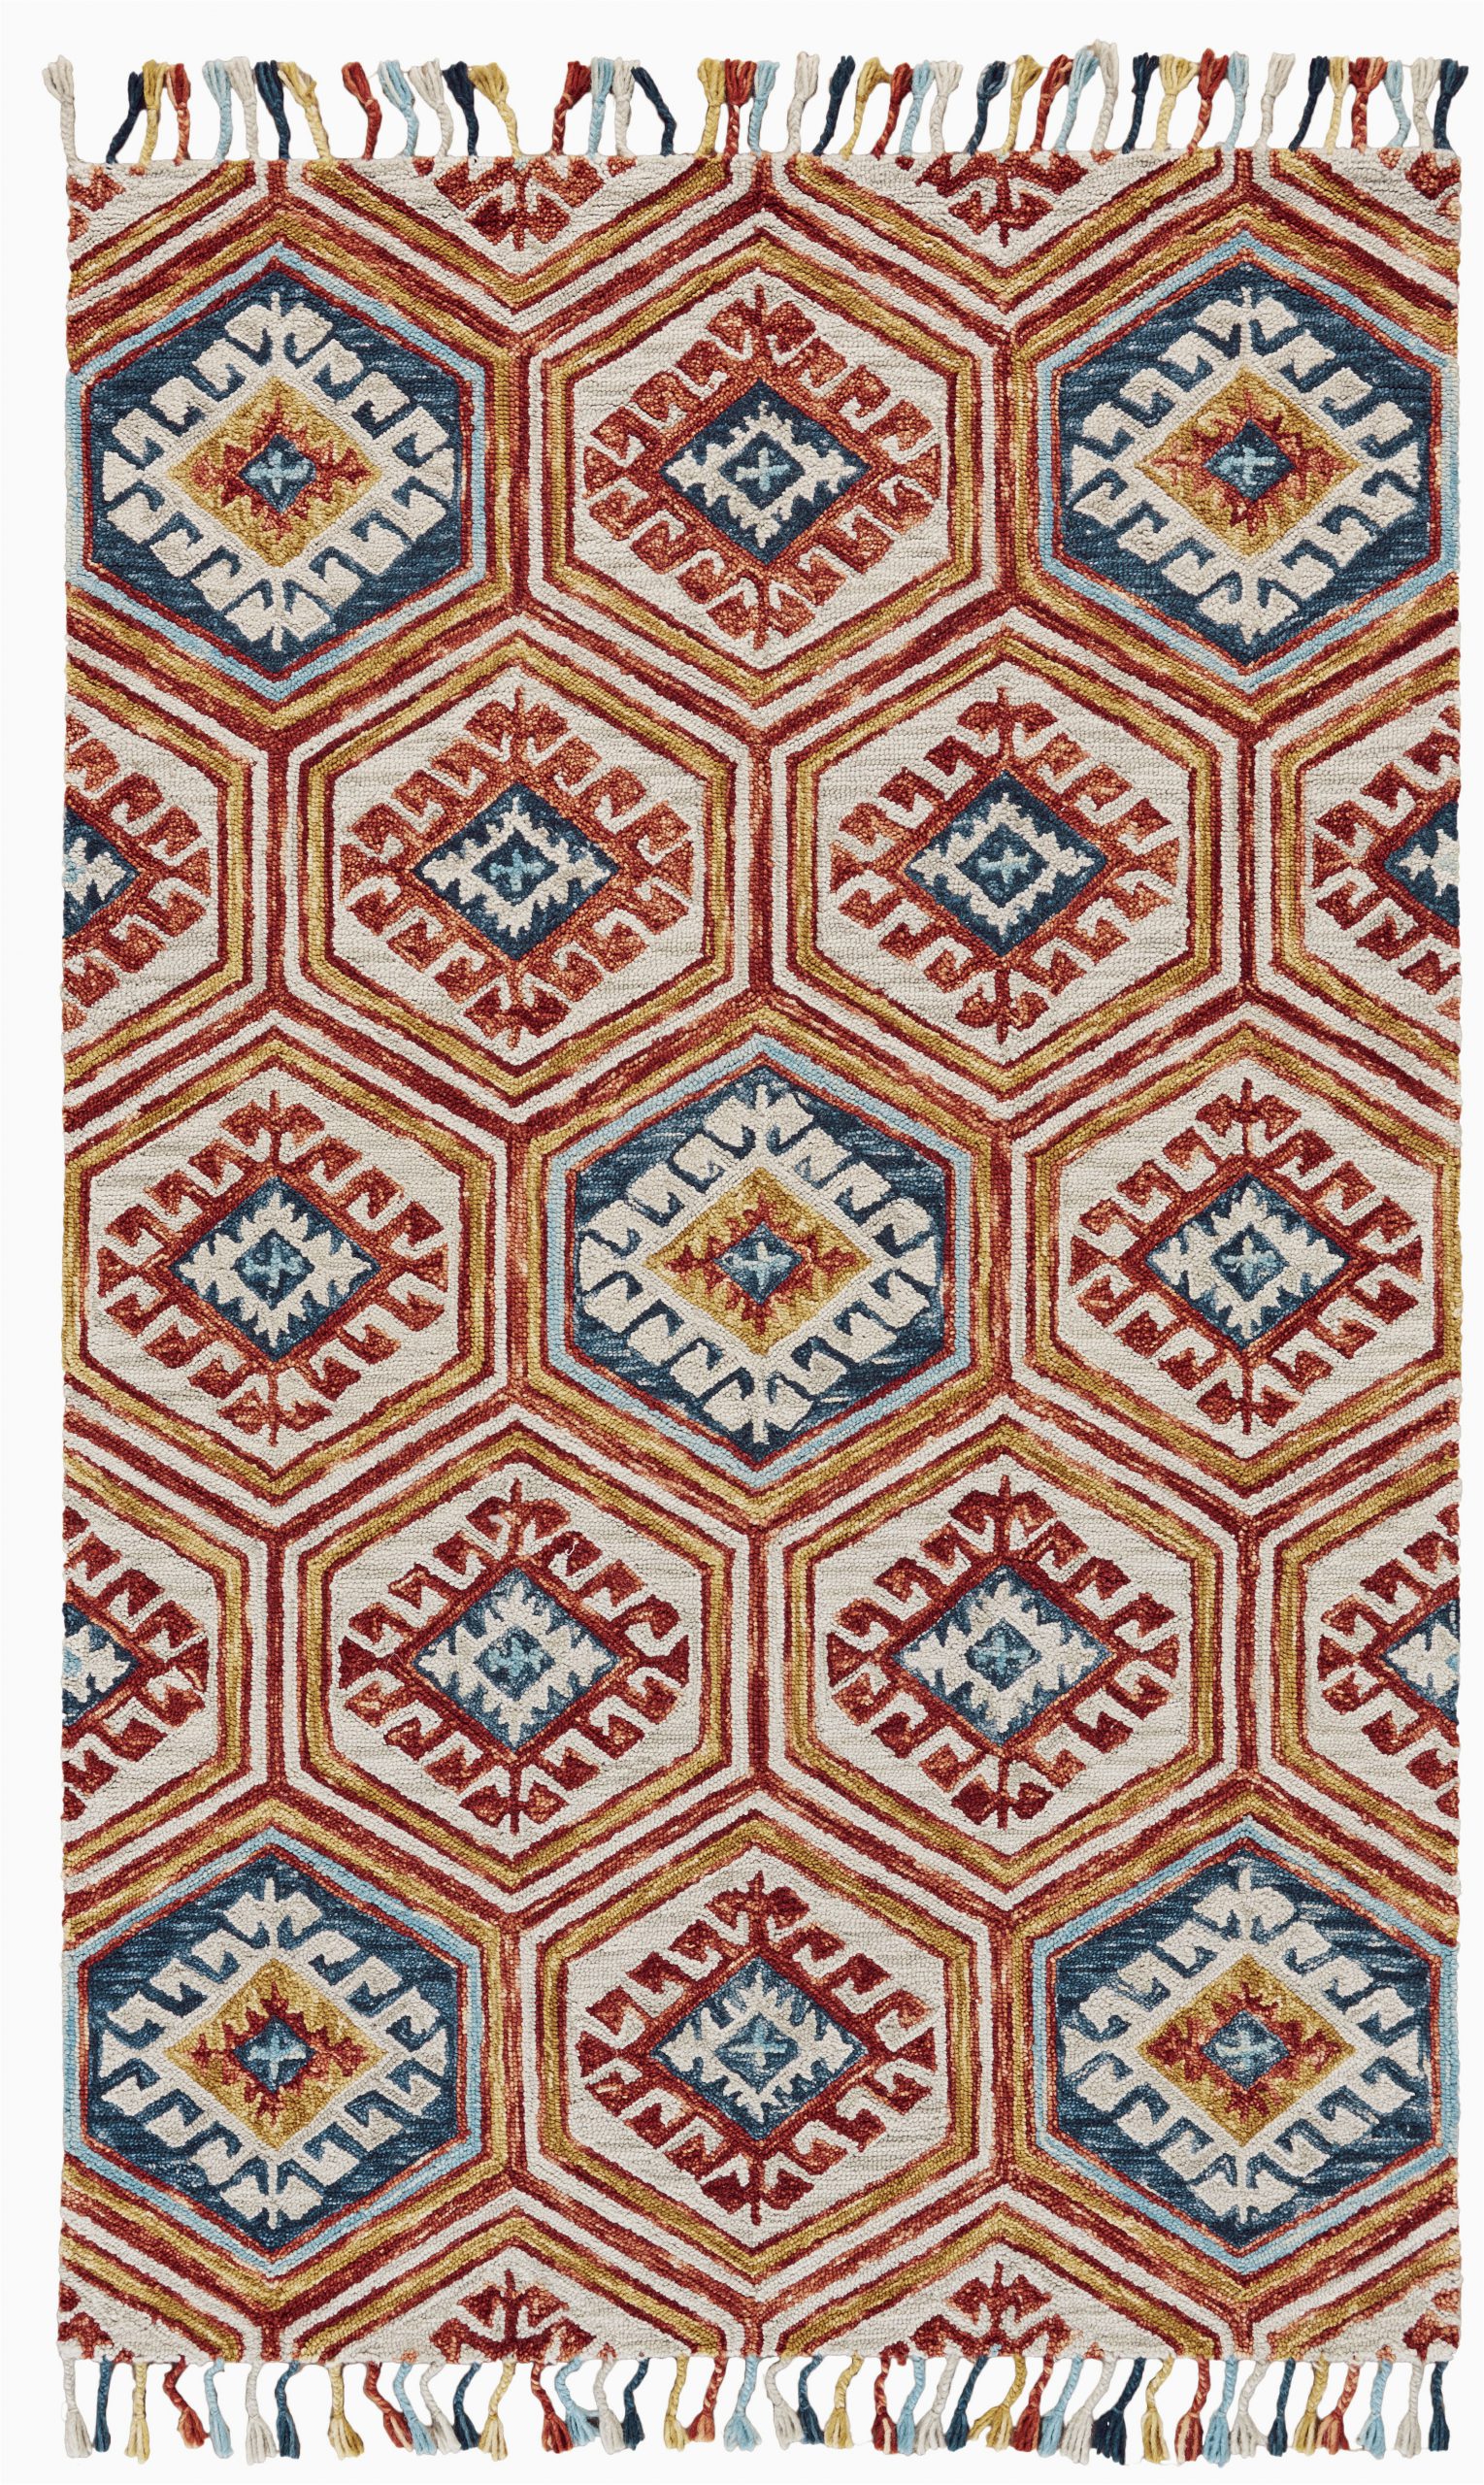 florence geometric handmade tufted wool orangeblue area rug